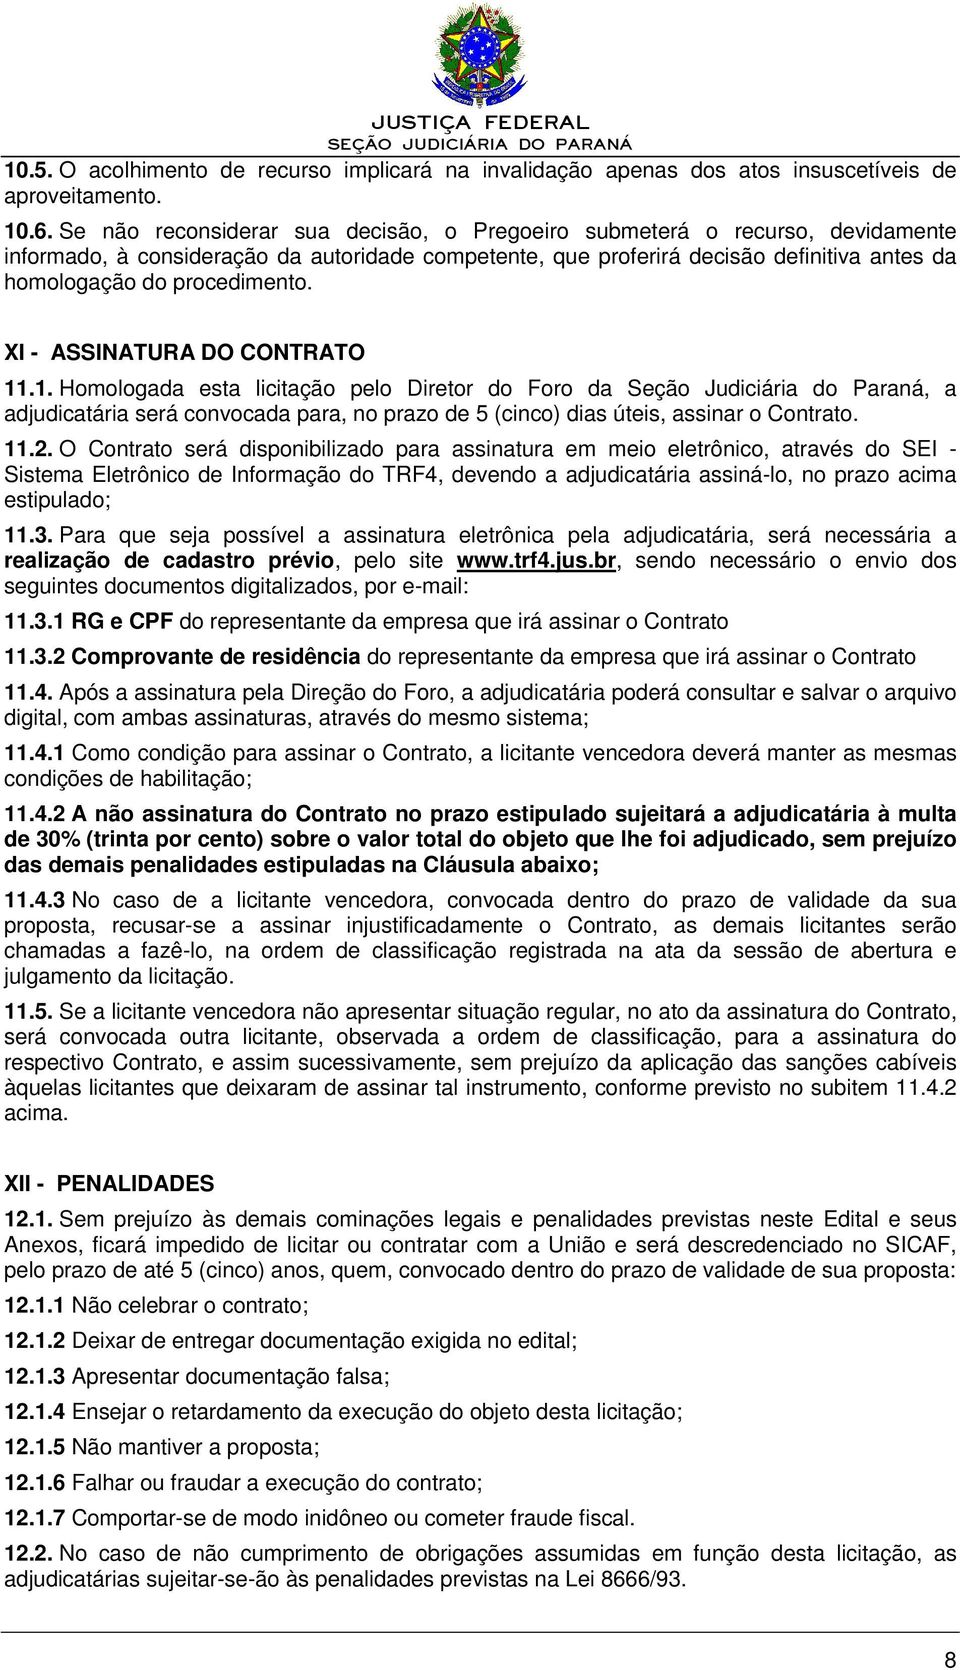 XI - ASSINATURA DO CONTRATO 11.1. Homologada esta licitação pelo Diretor do Foro da Seção Judiciária do Paraná, a adjudicatária será convocada para, no prazo de 5 (cinco) dias úteis, assinar o Contrato.